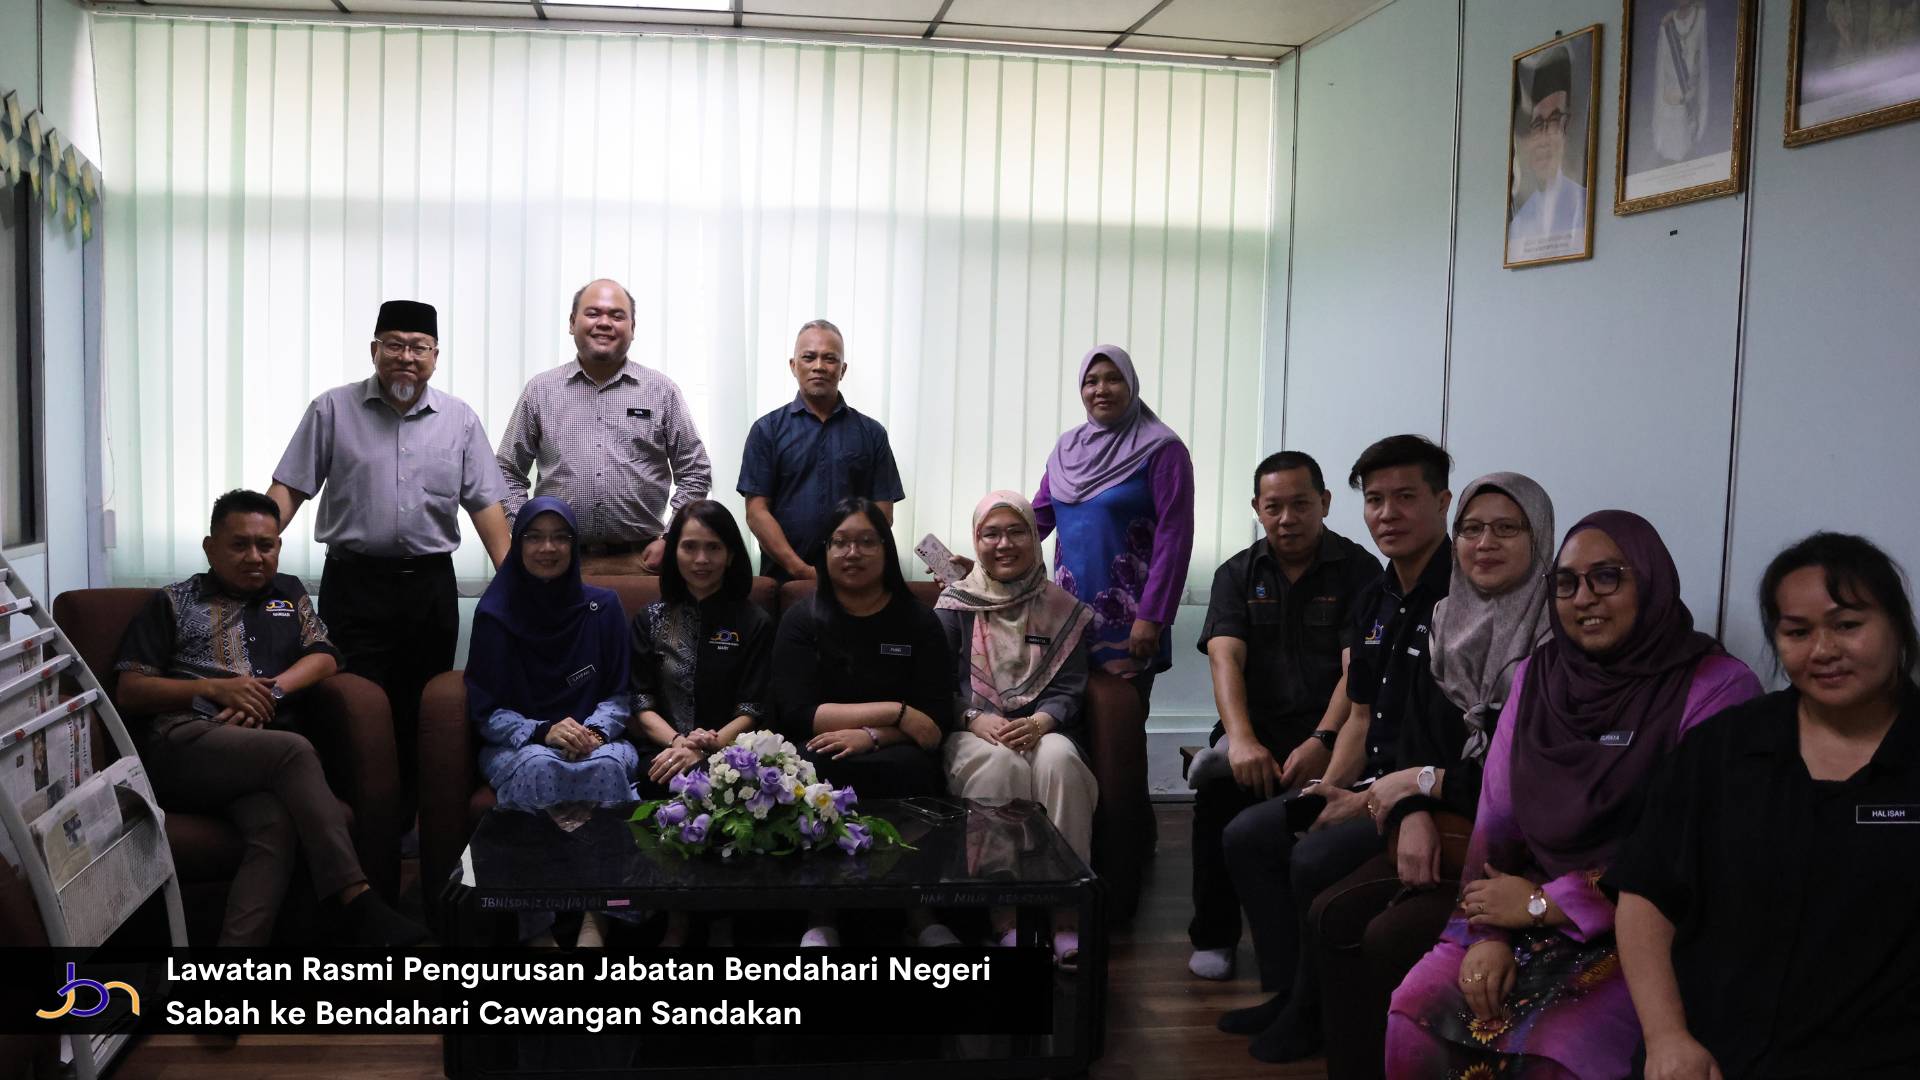 Lawatan Rasmi Pengurusan Tertinggi Jabatan Bendahari Negeri Sabah (JBNS) ke Bendahari Cawangan Sandakan